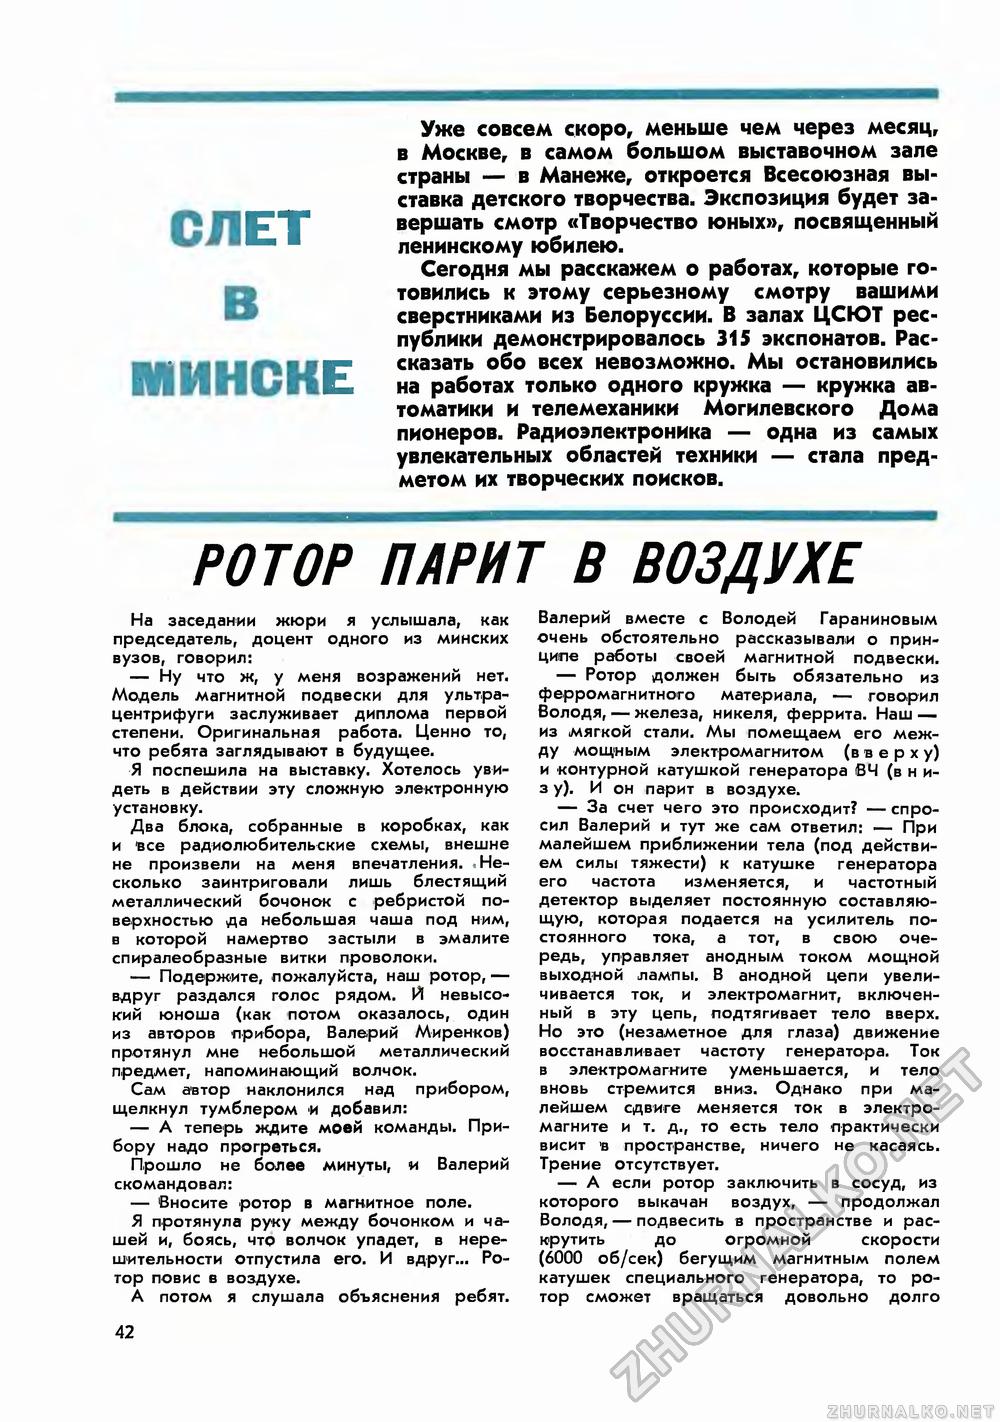 Юный техник 1970-11, страница 44